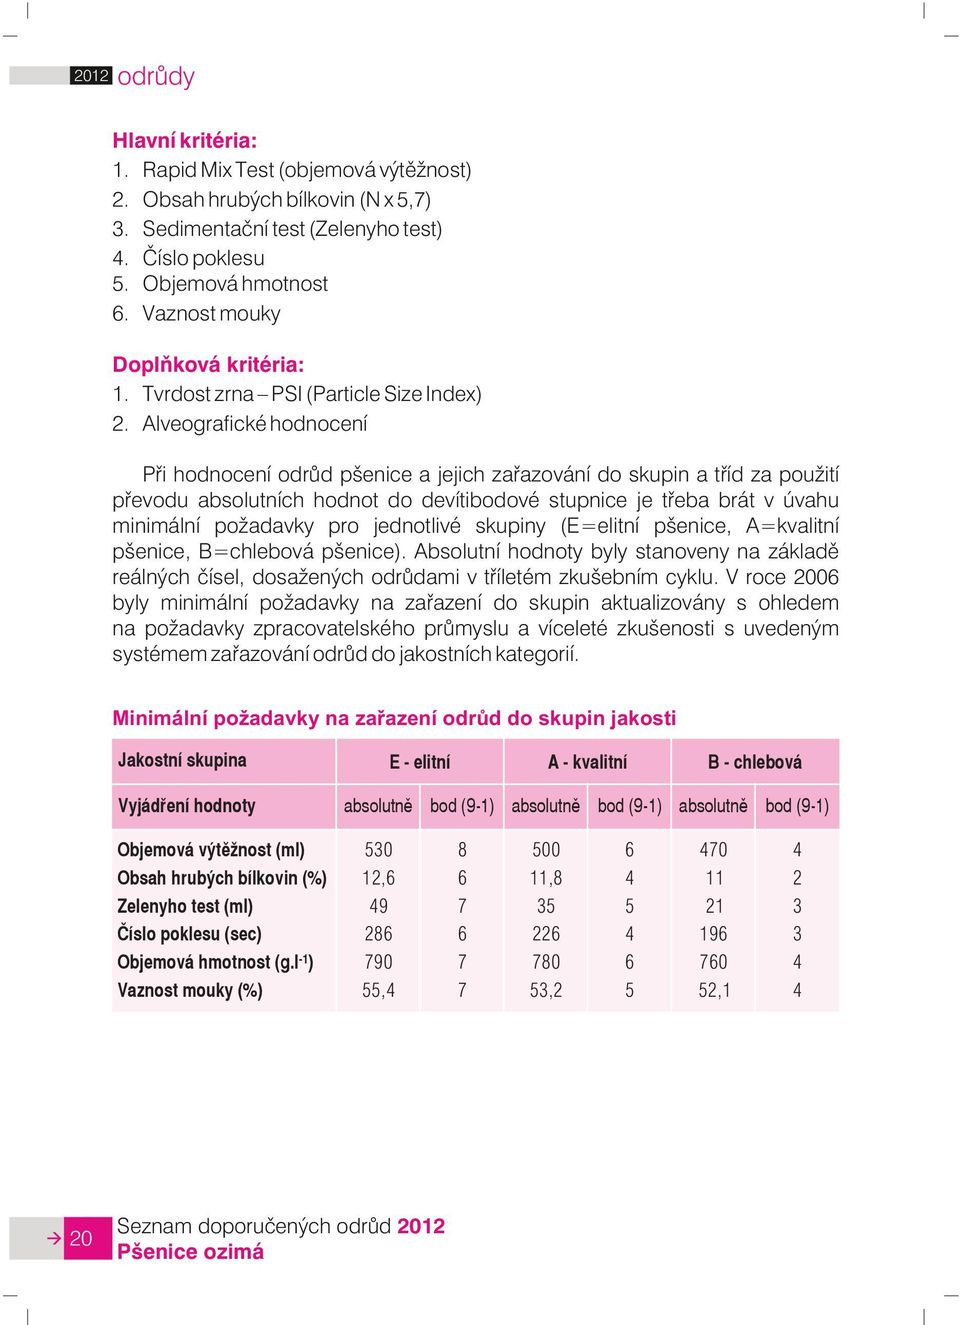 (9-1) Objemová výtìžnost (ml) Obsah hrubých bílkovin (%) Zelenyho